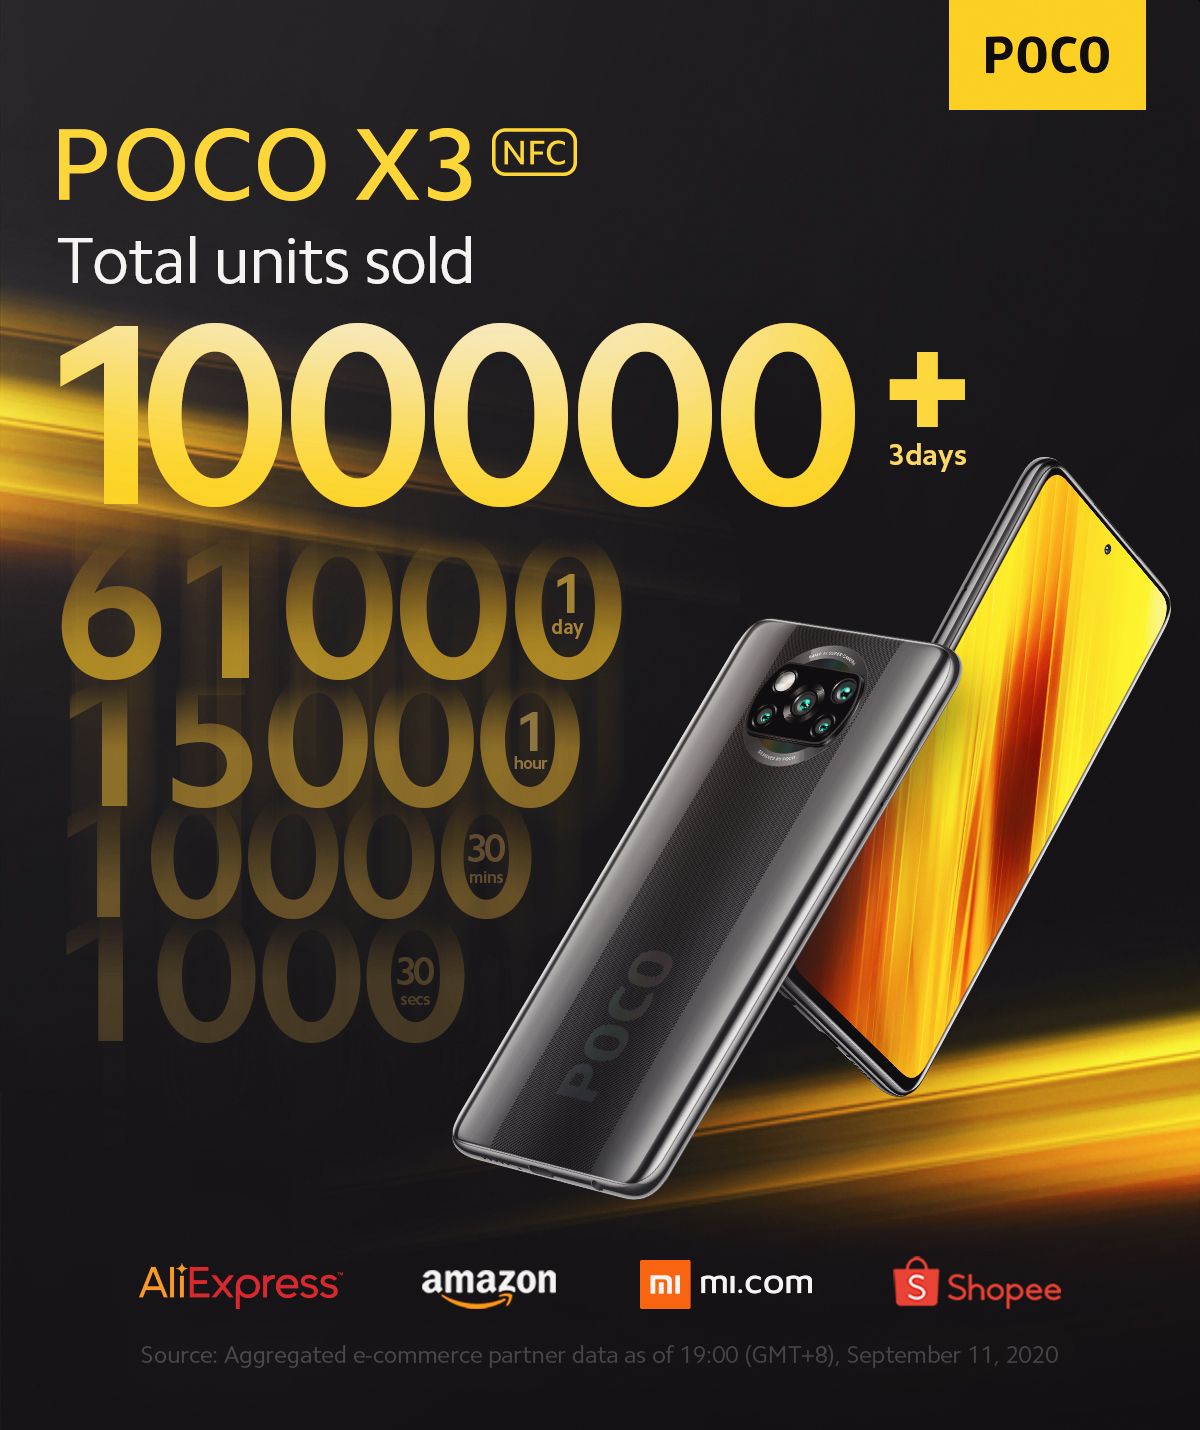 Poco X3 NFC worldwide